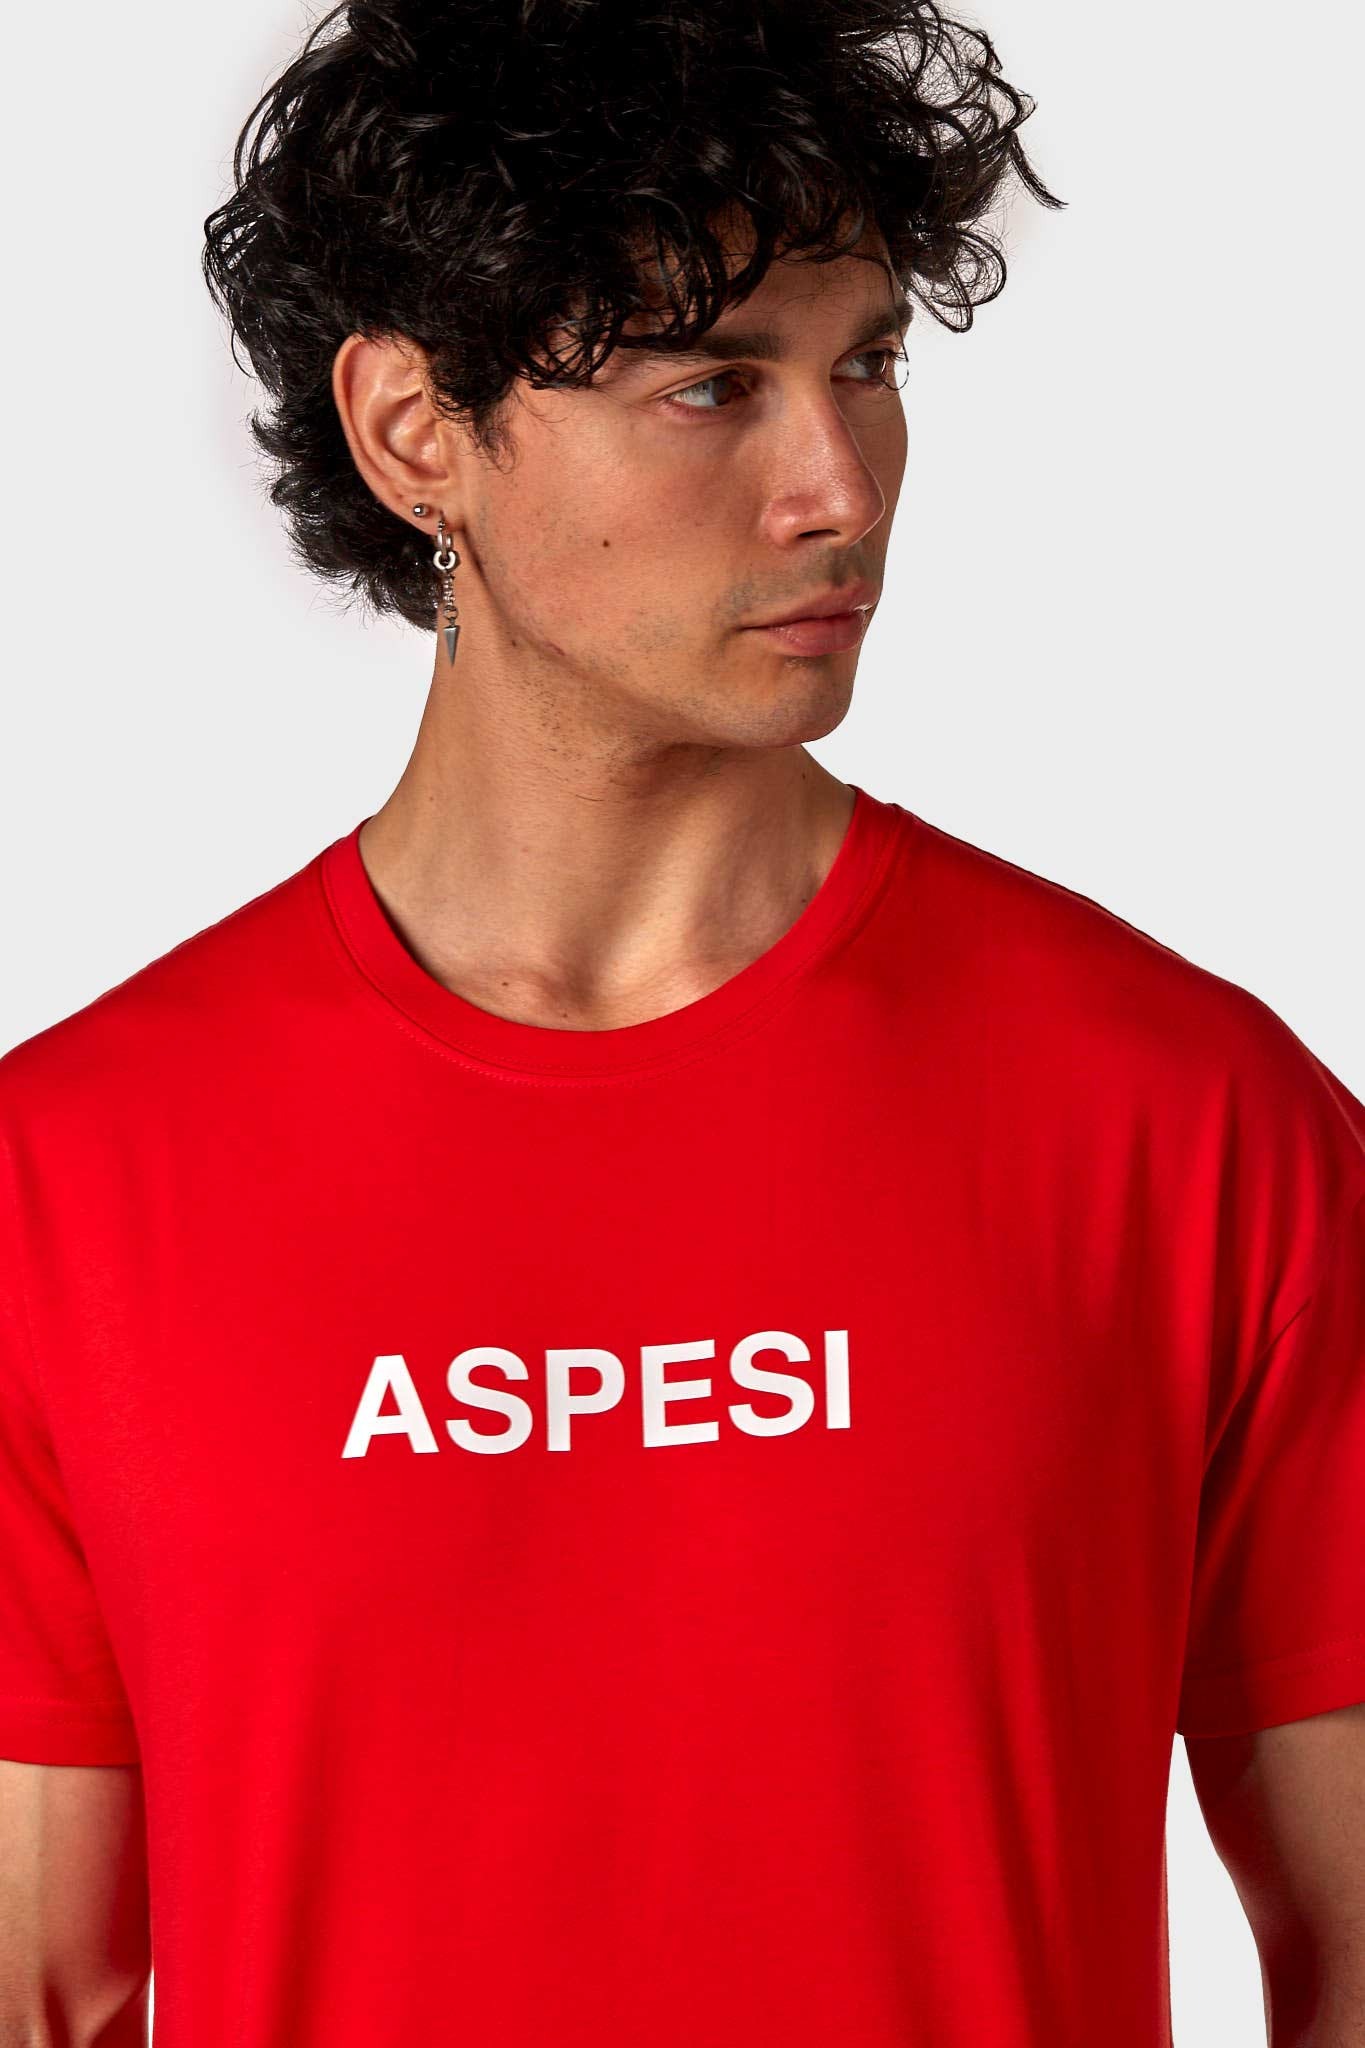 ASPESI T-SHIRT ASP1MTS02 ROSSO UOMO